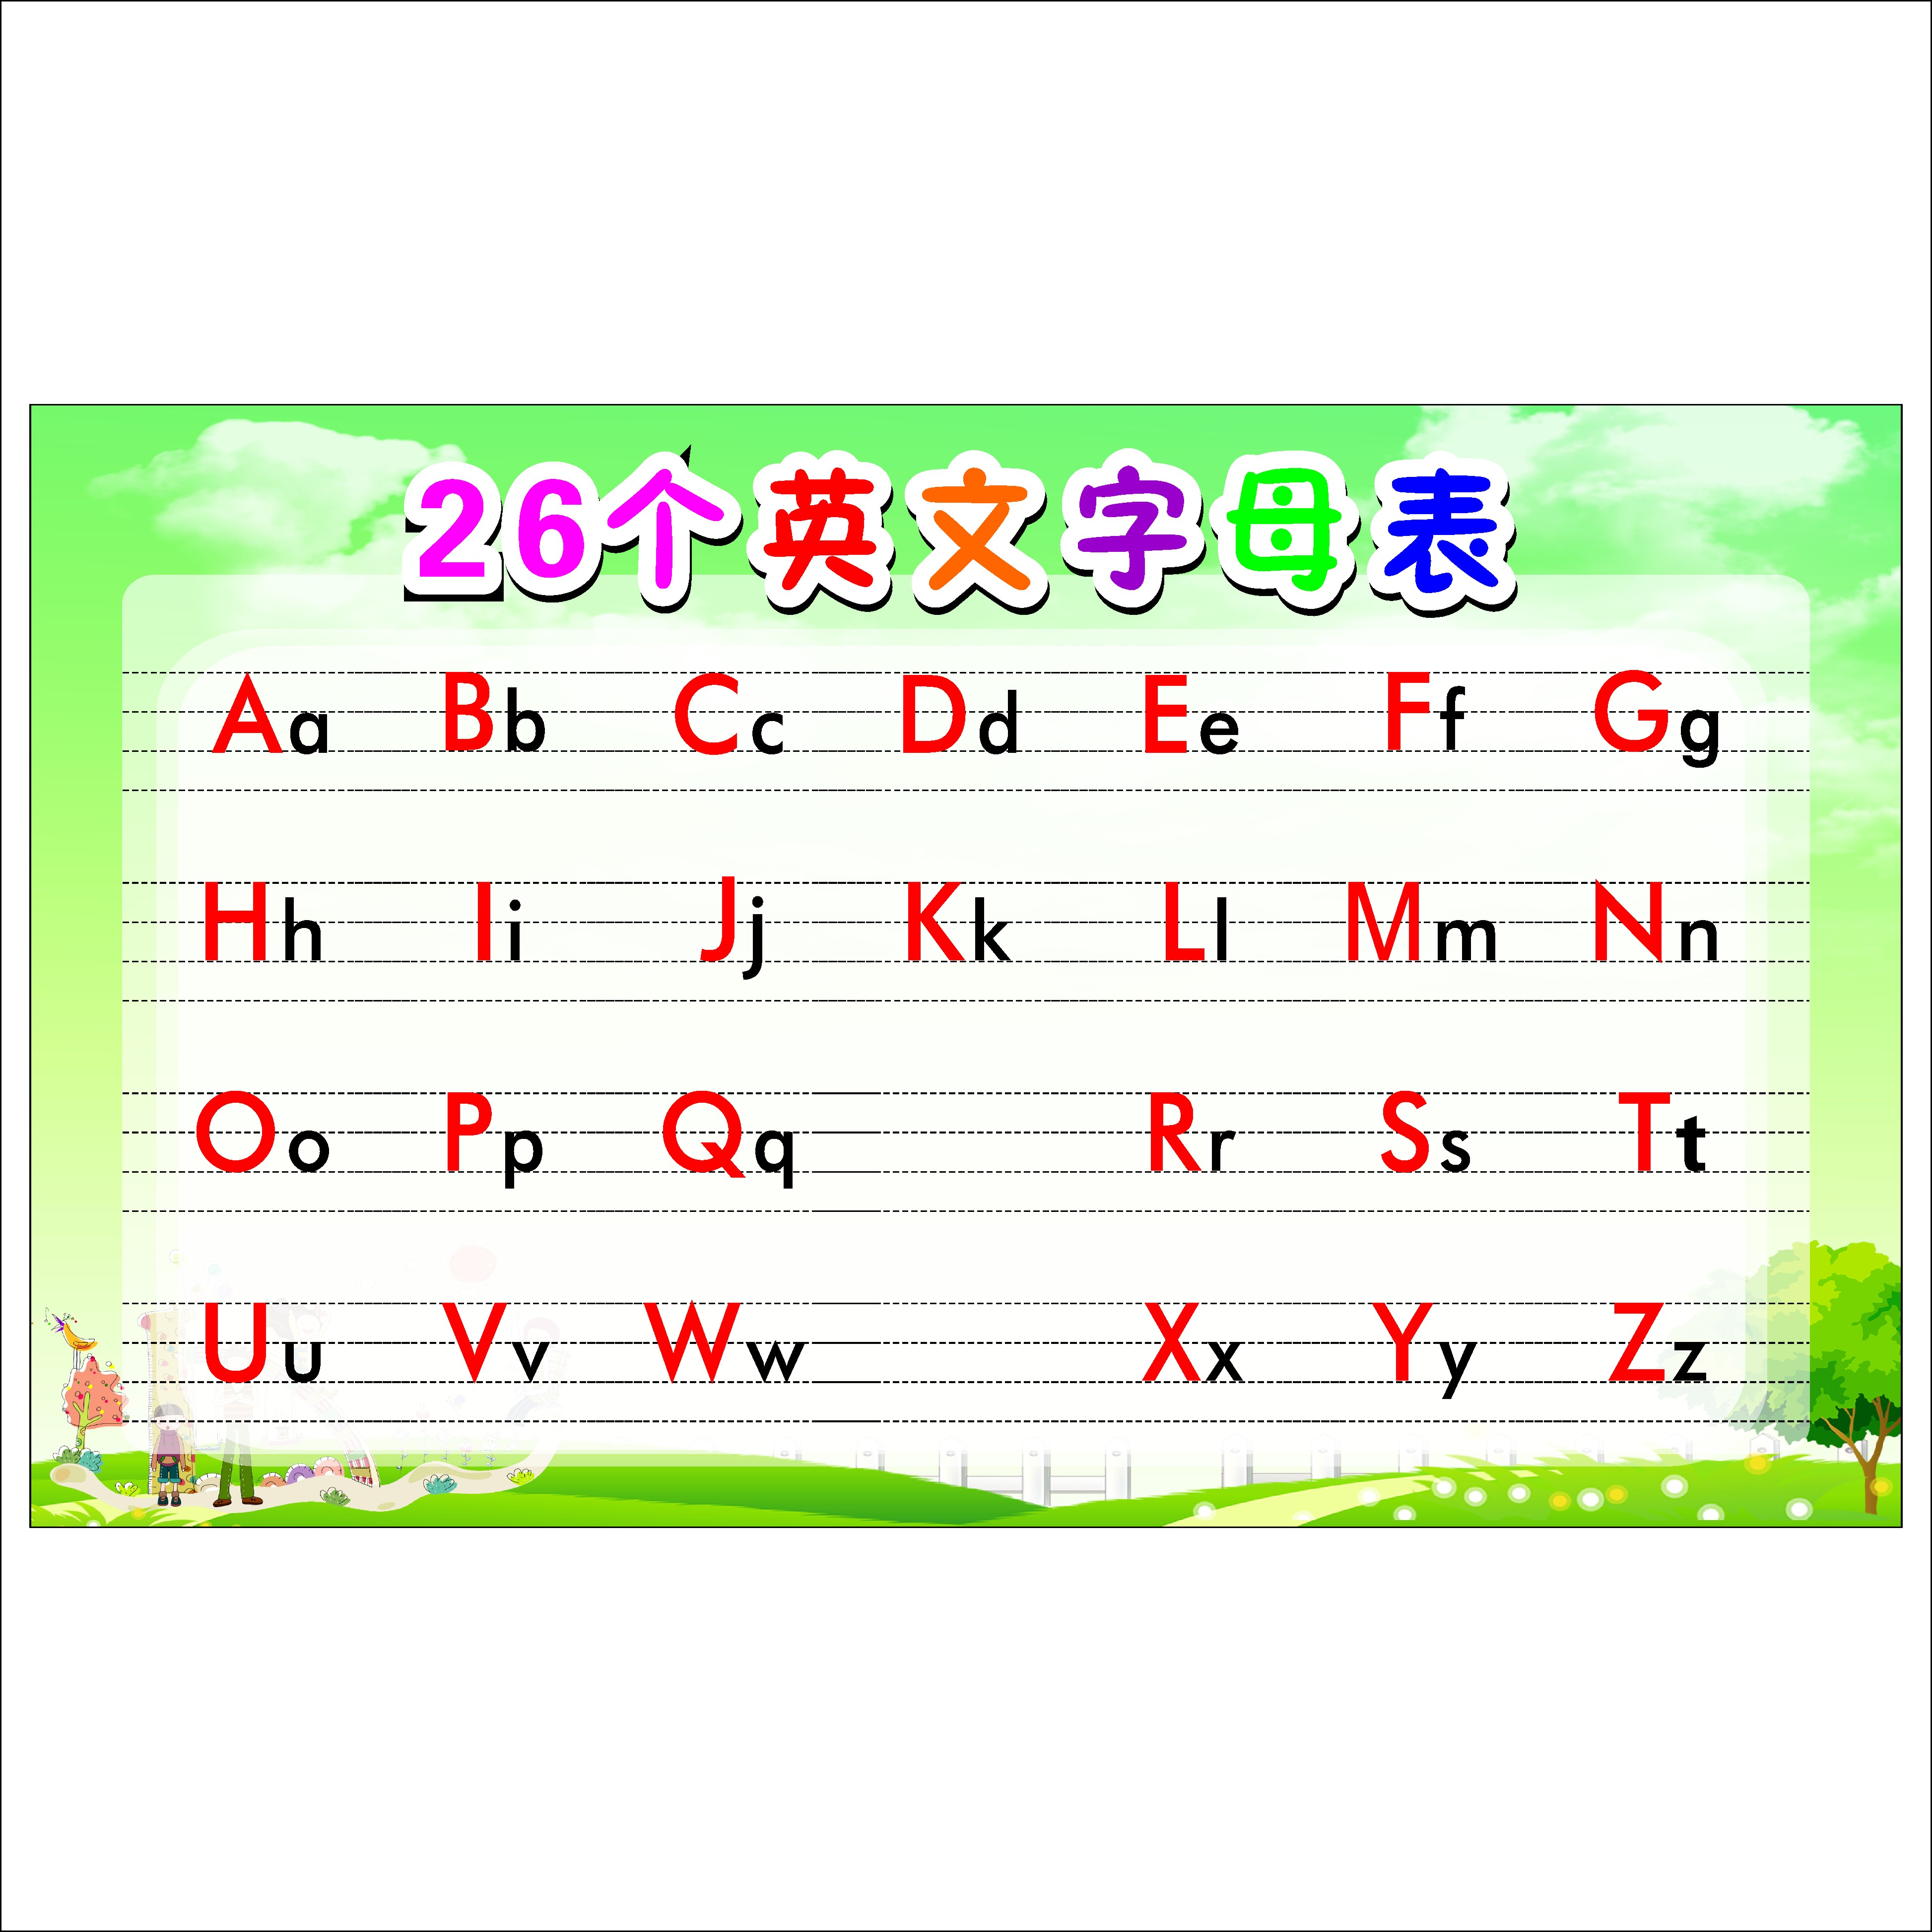 26个英文字母表挂图小学生二十六个英文字母表汉语拼音大小写墙贴